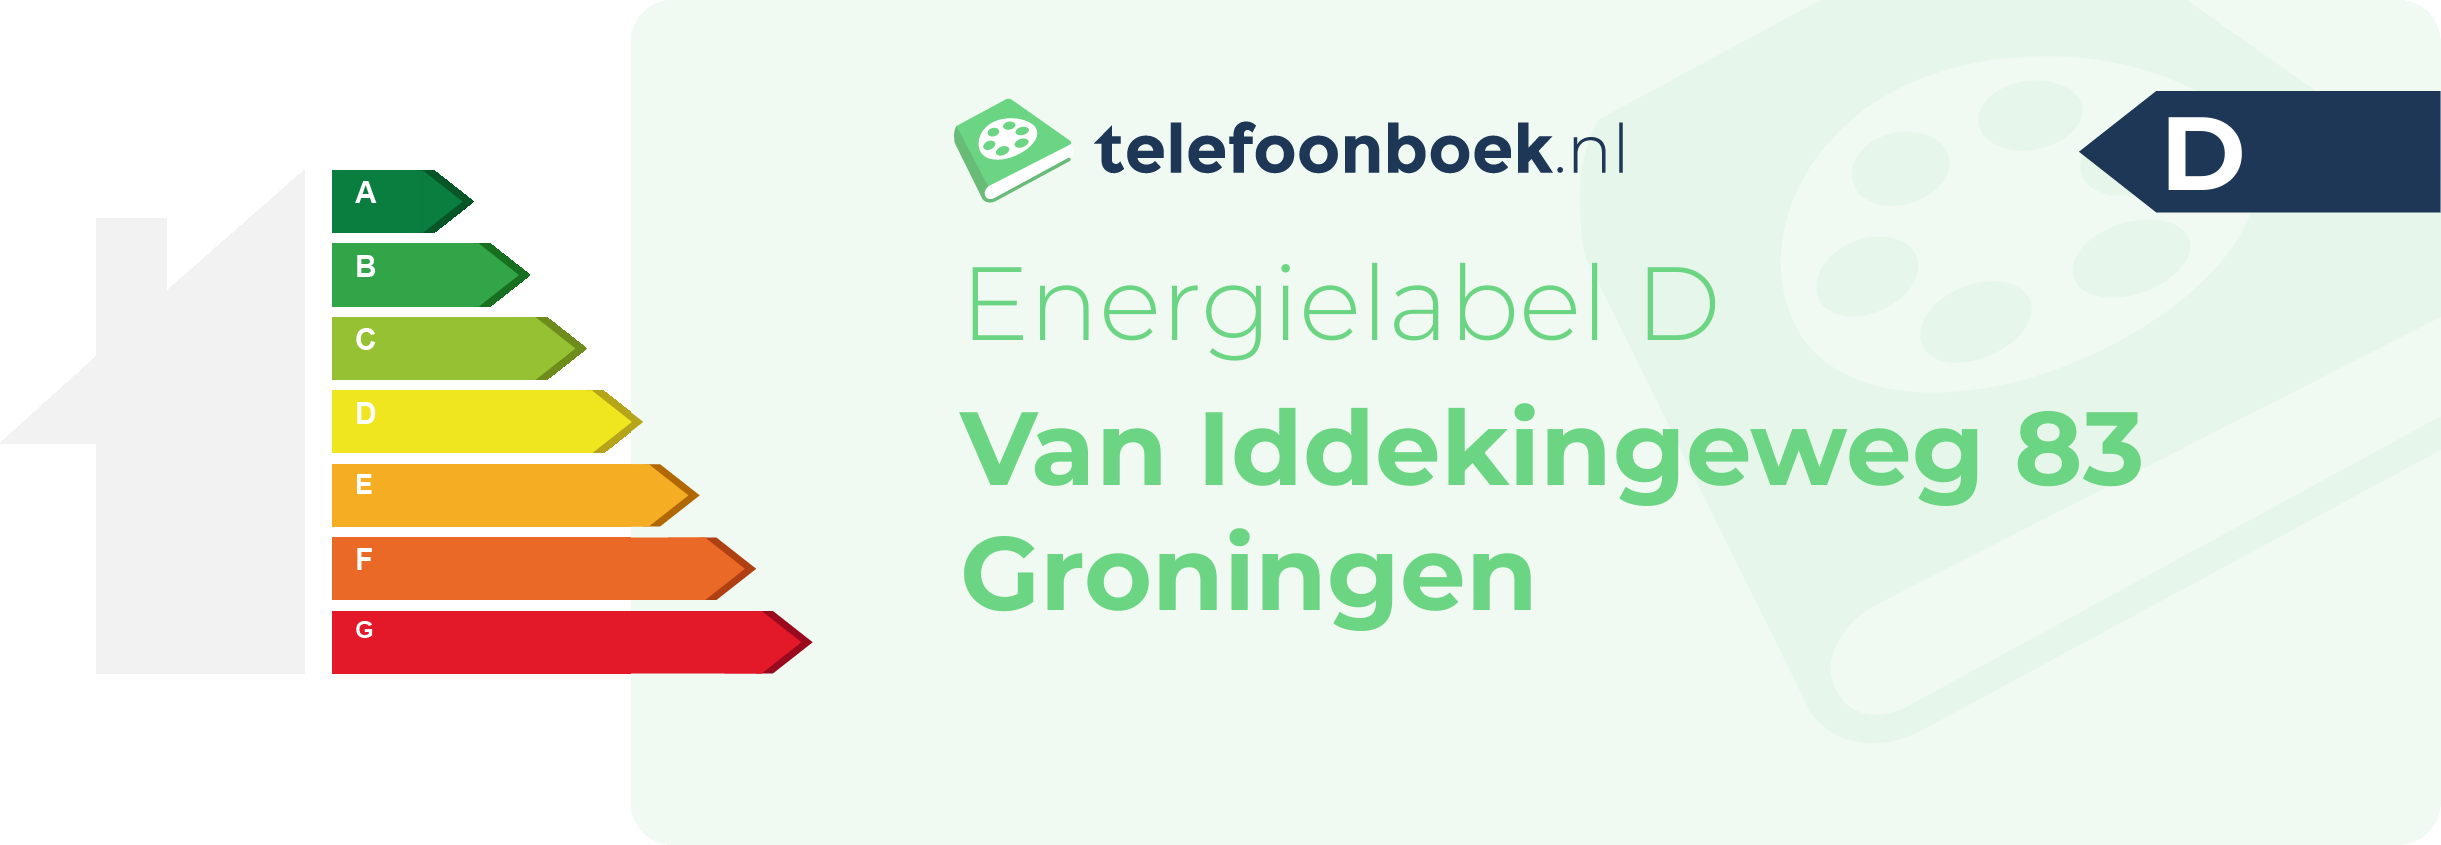 Energielabel Van Iddekingeweg 83 Groningen